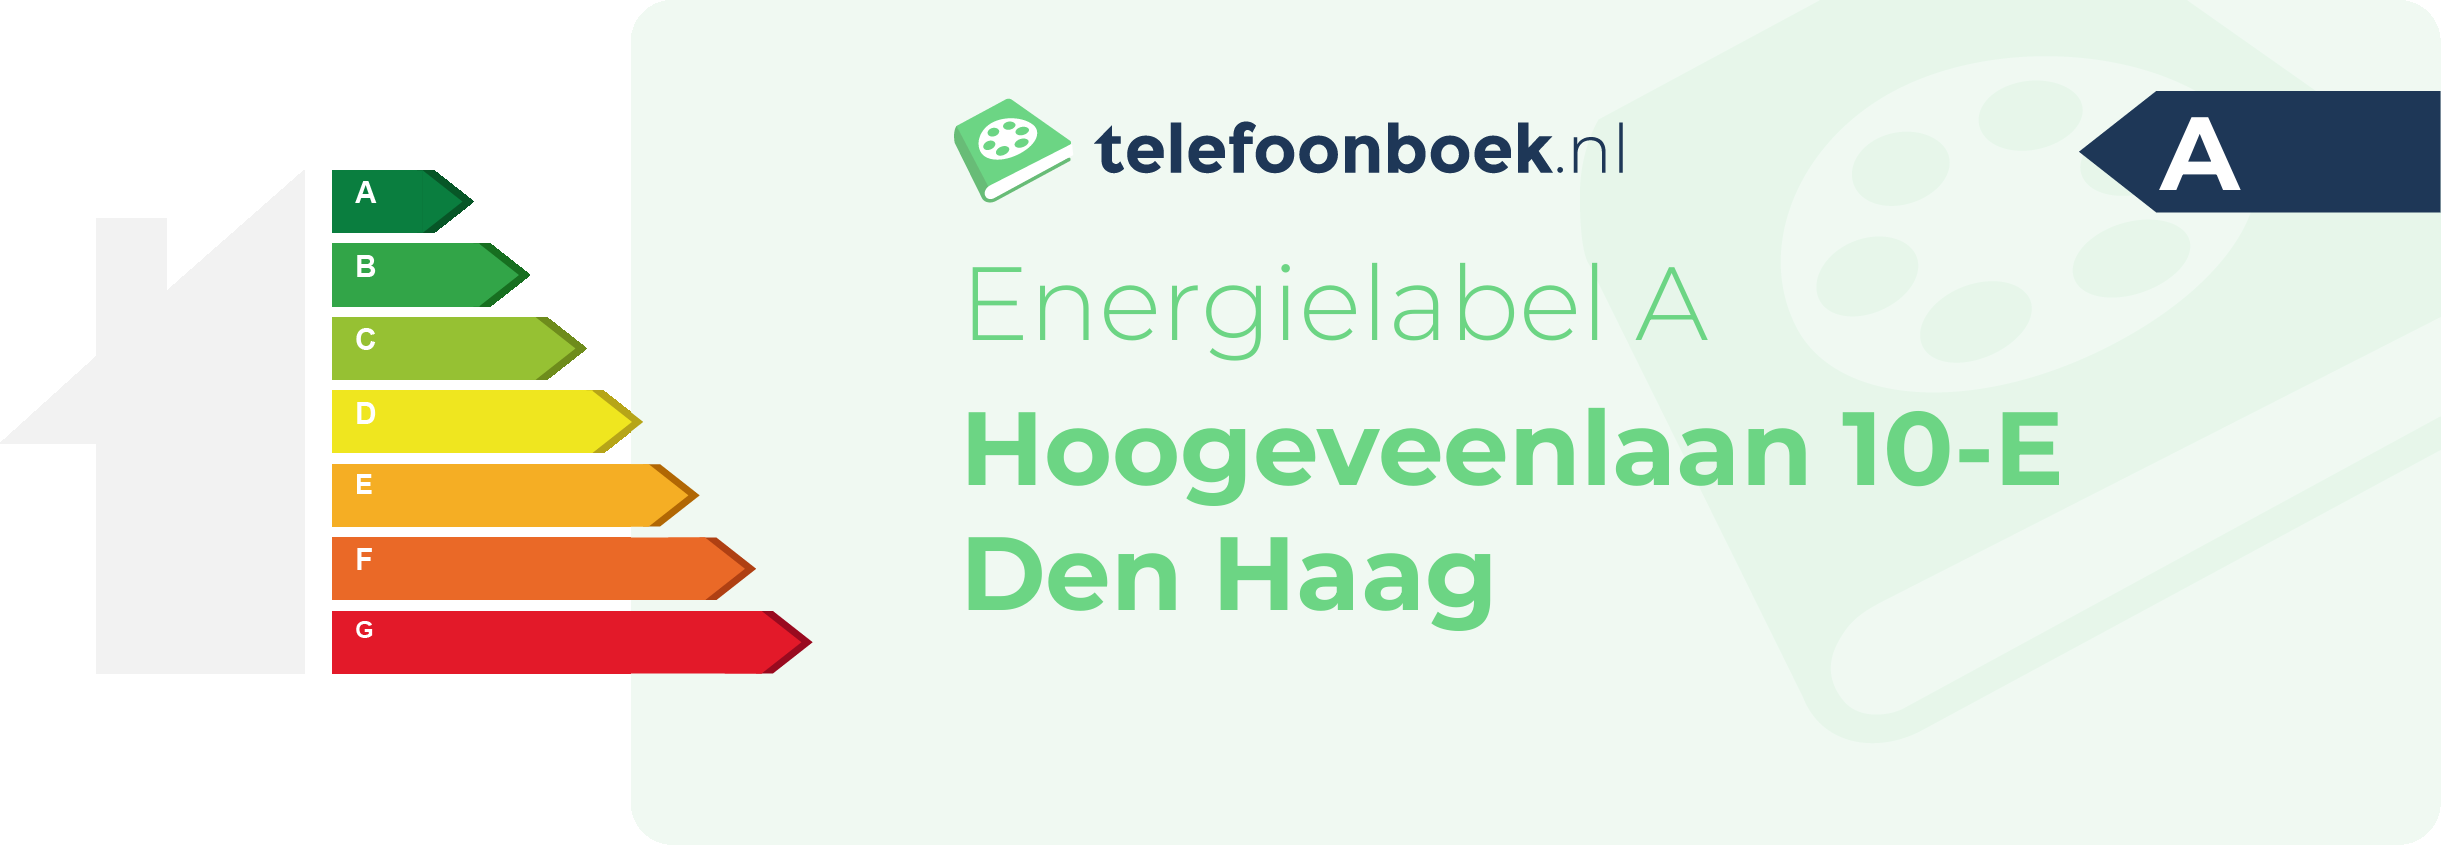 Energielabel Hoogeveenlaan 10-E Den Haag